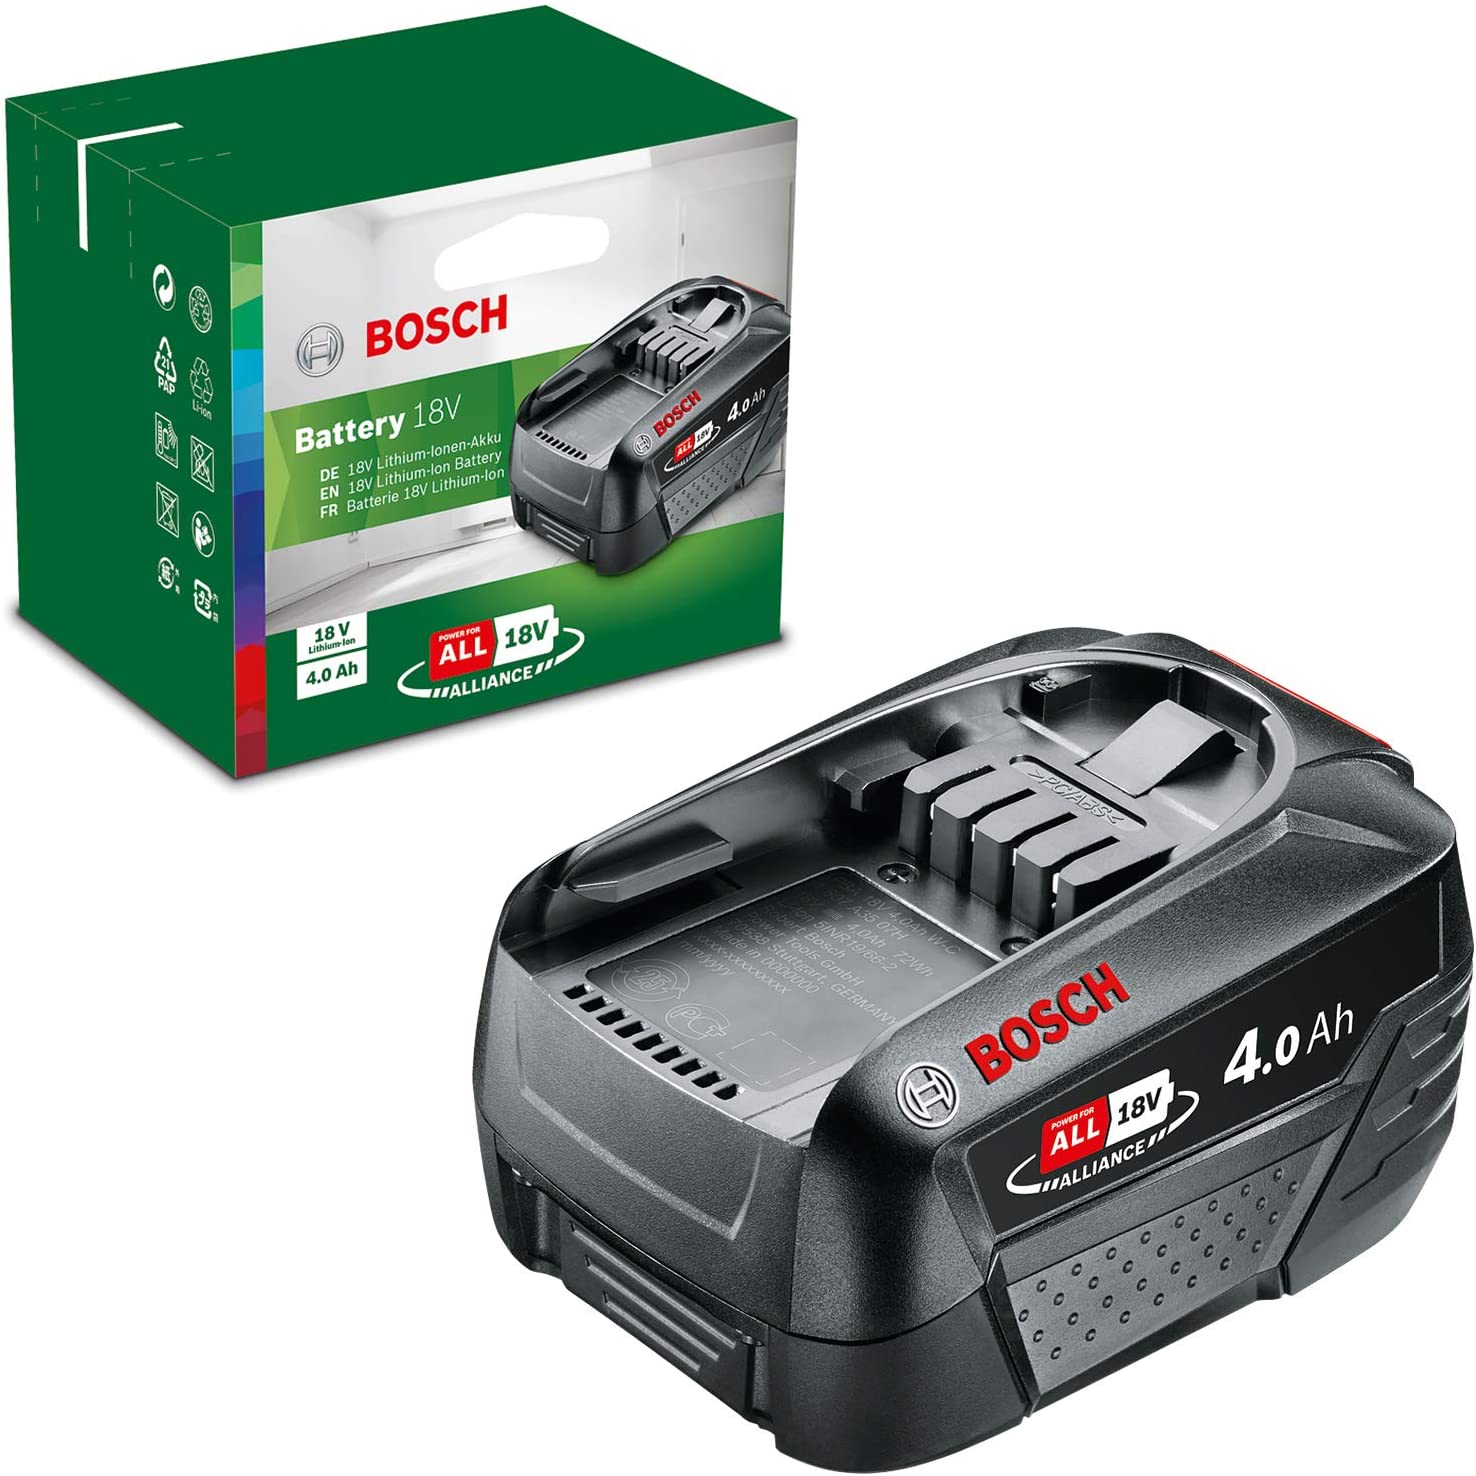 Bosch Home and Garden Battery Pack PBA 18V (battery 4.0 Ah W-C, 18